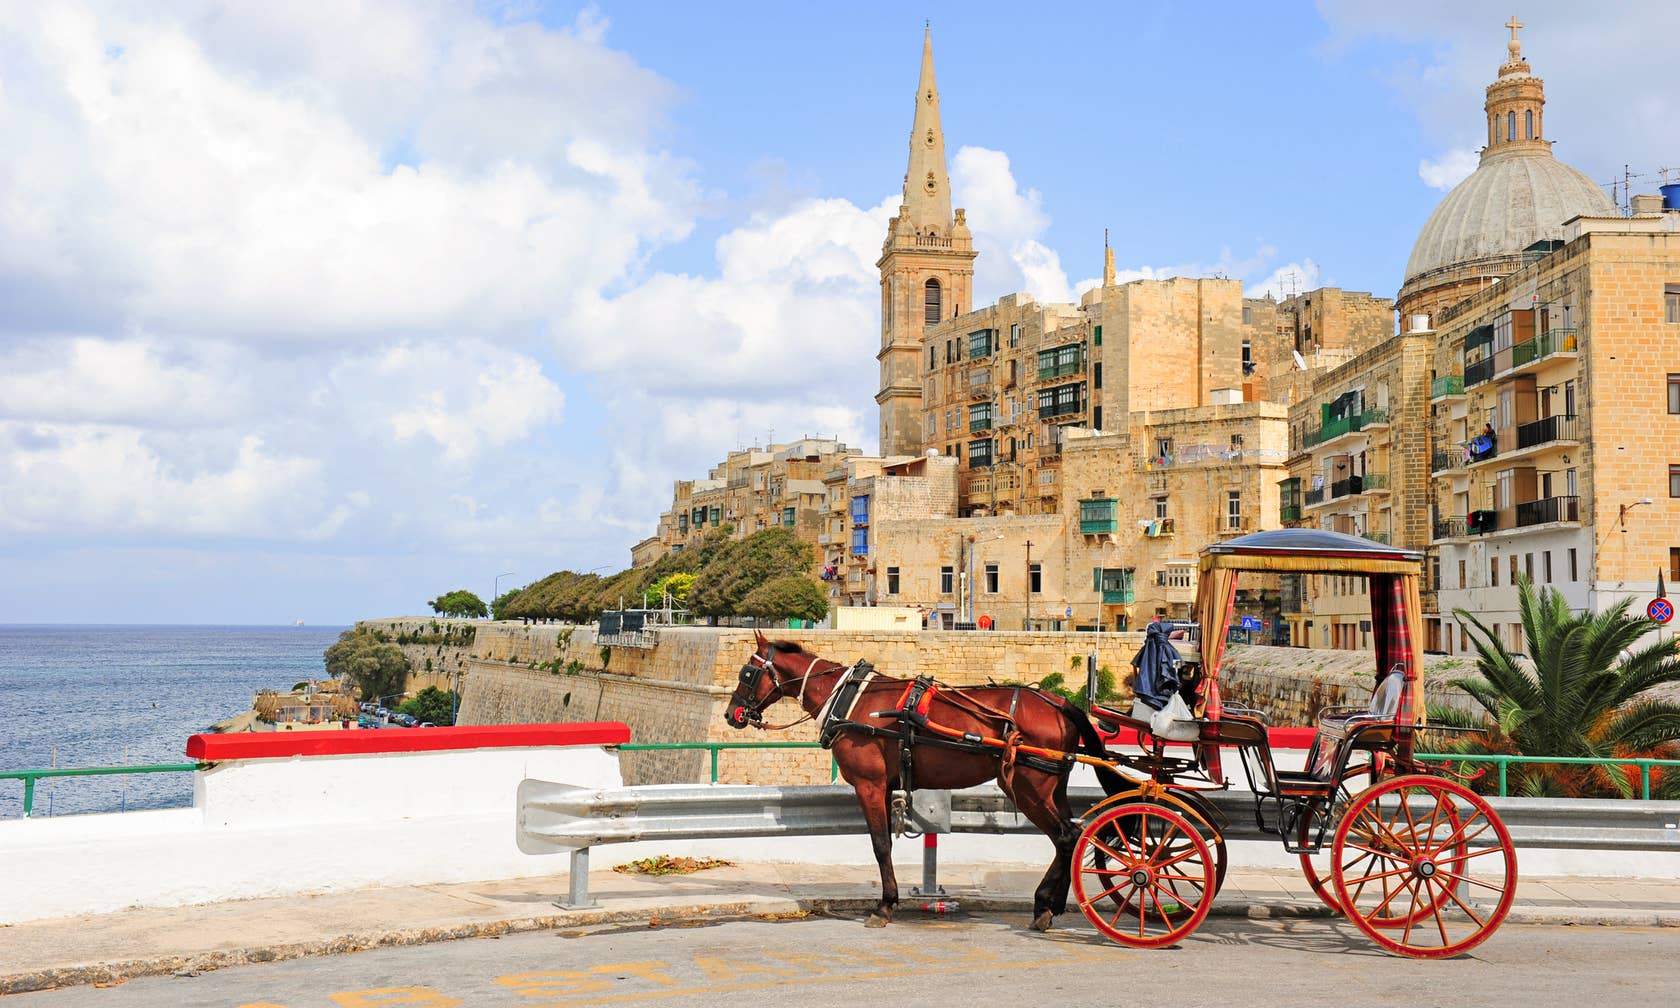 Vuokrakohteet paikassa Malta